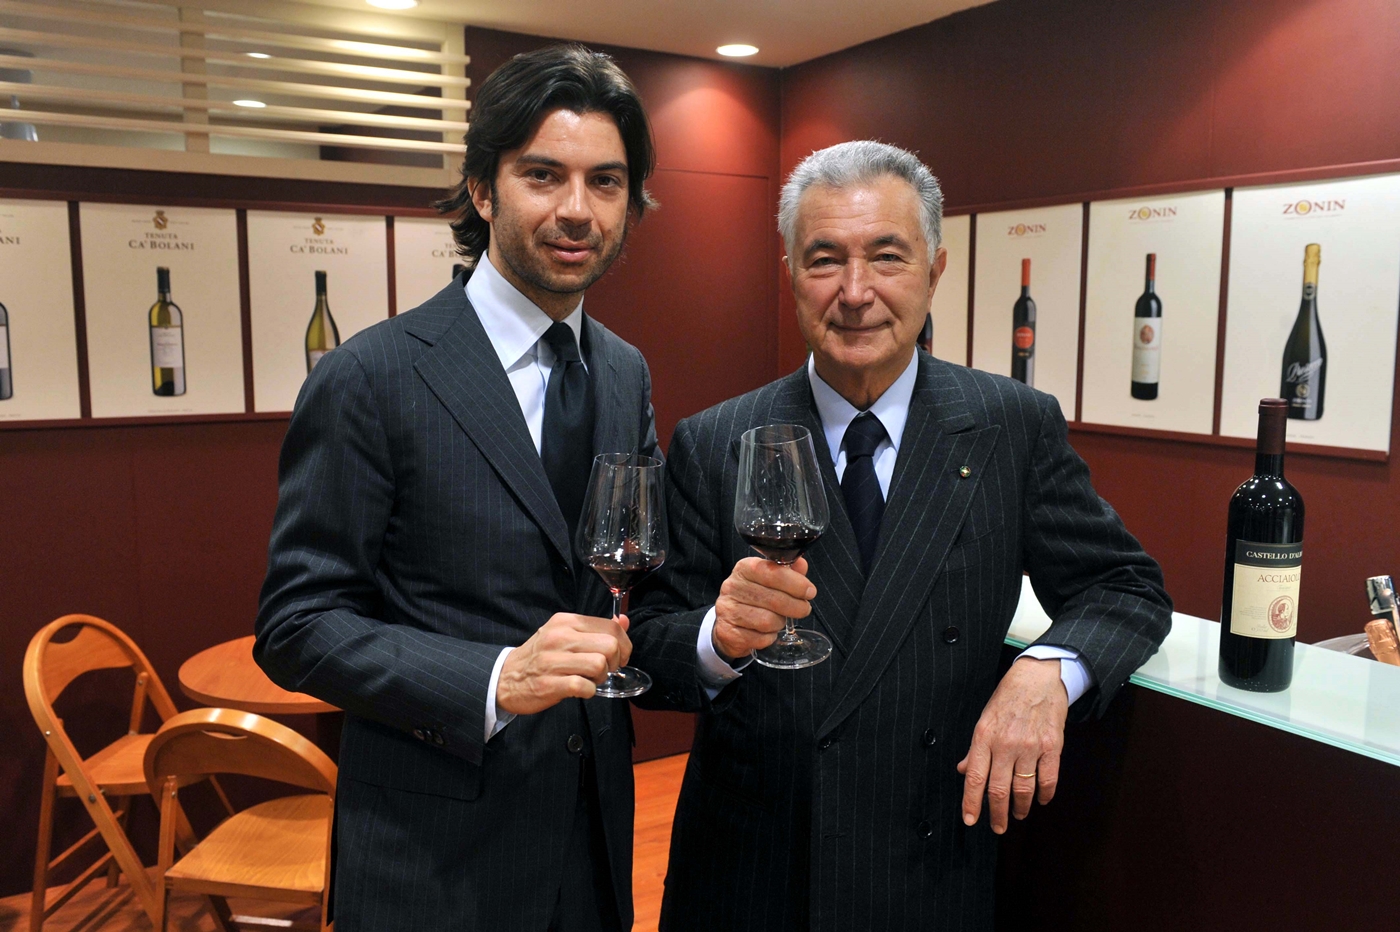 Francesco e Gianni Zonin